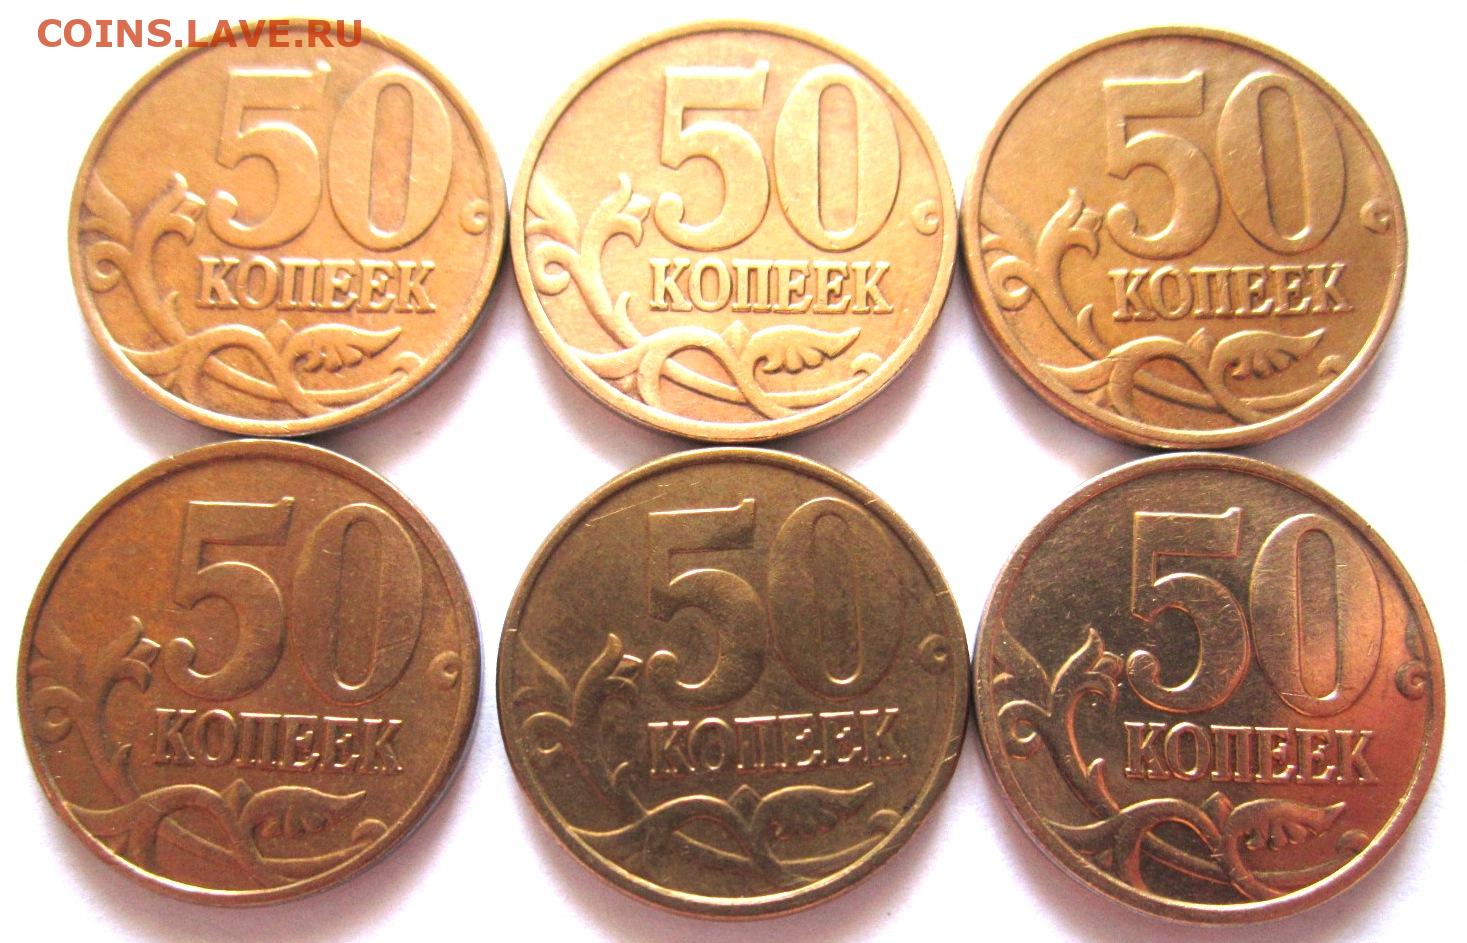 Рубль 5 31. 50 Копеек джипег. 1 Руб 50 копеек -25коп.. 5 Рублей . 12коп =. 31 Монетка.